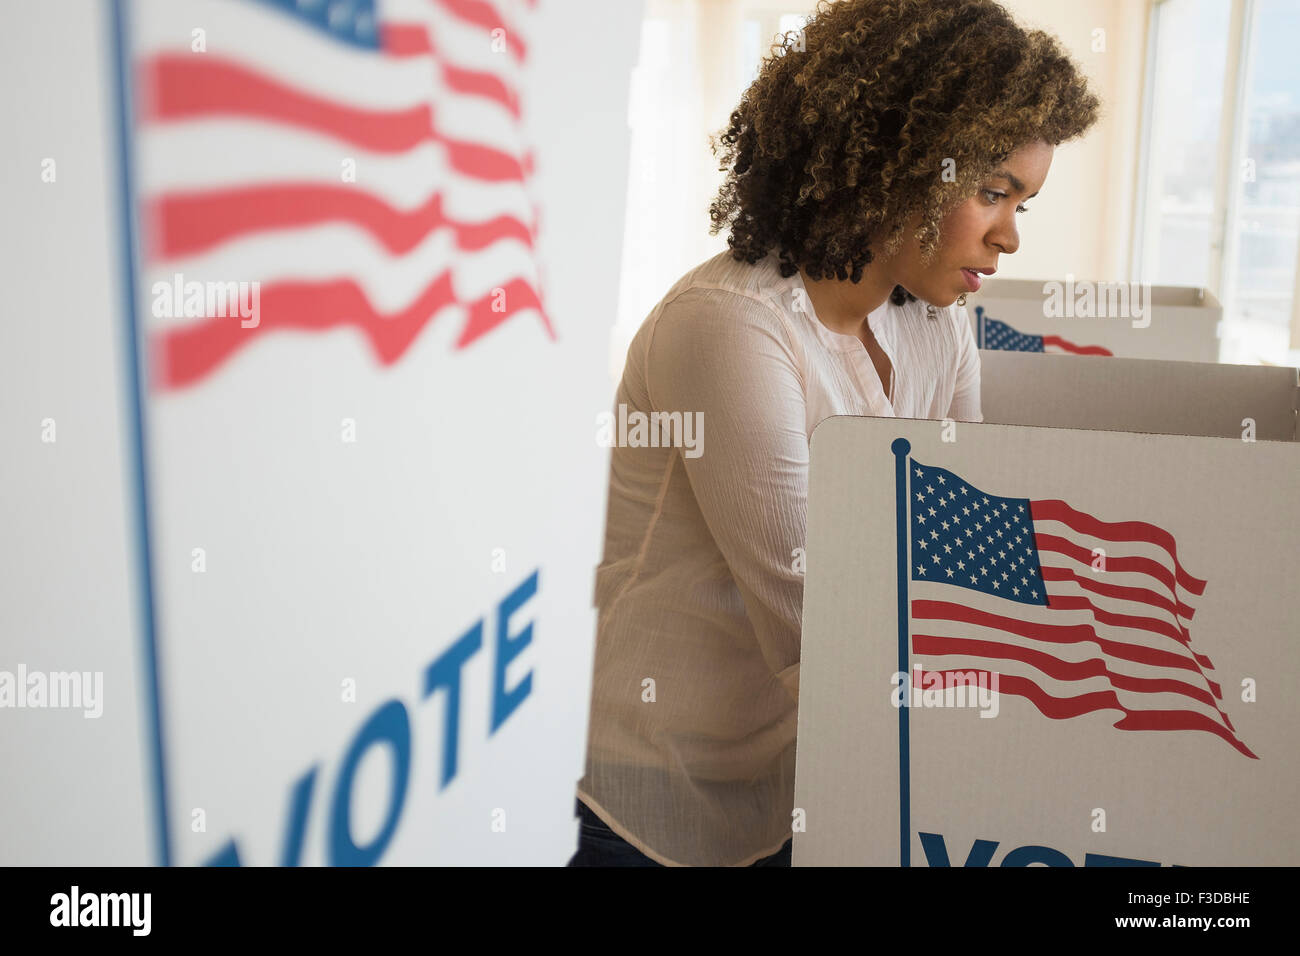 Junge Frau Vorbereitung Wahlkabine Stockfoto